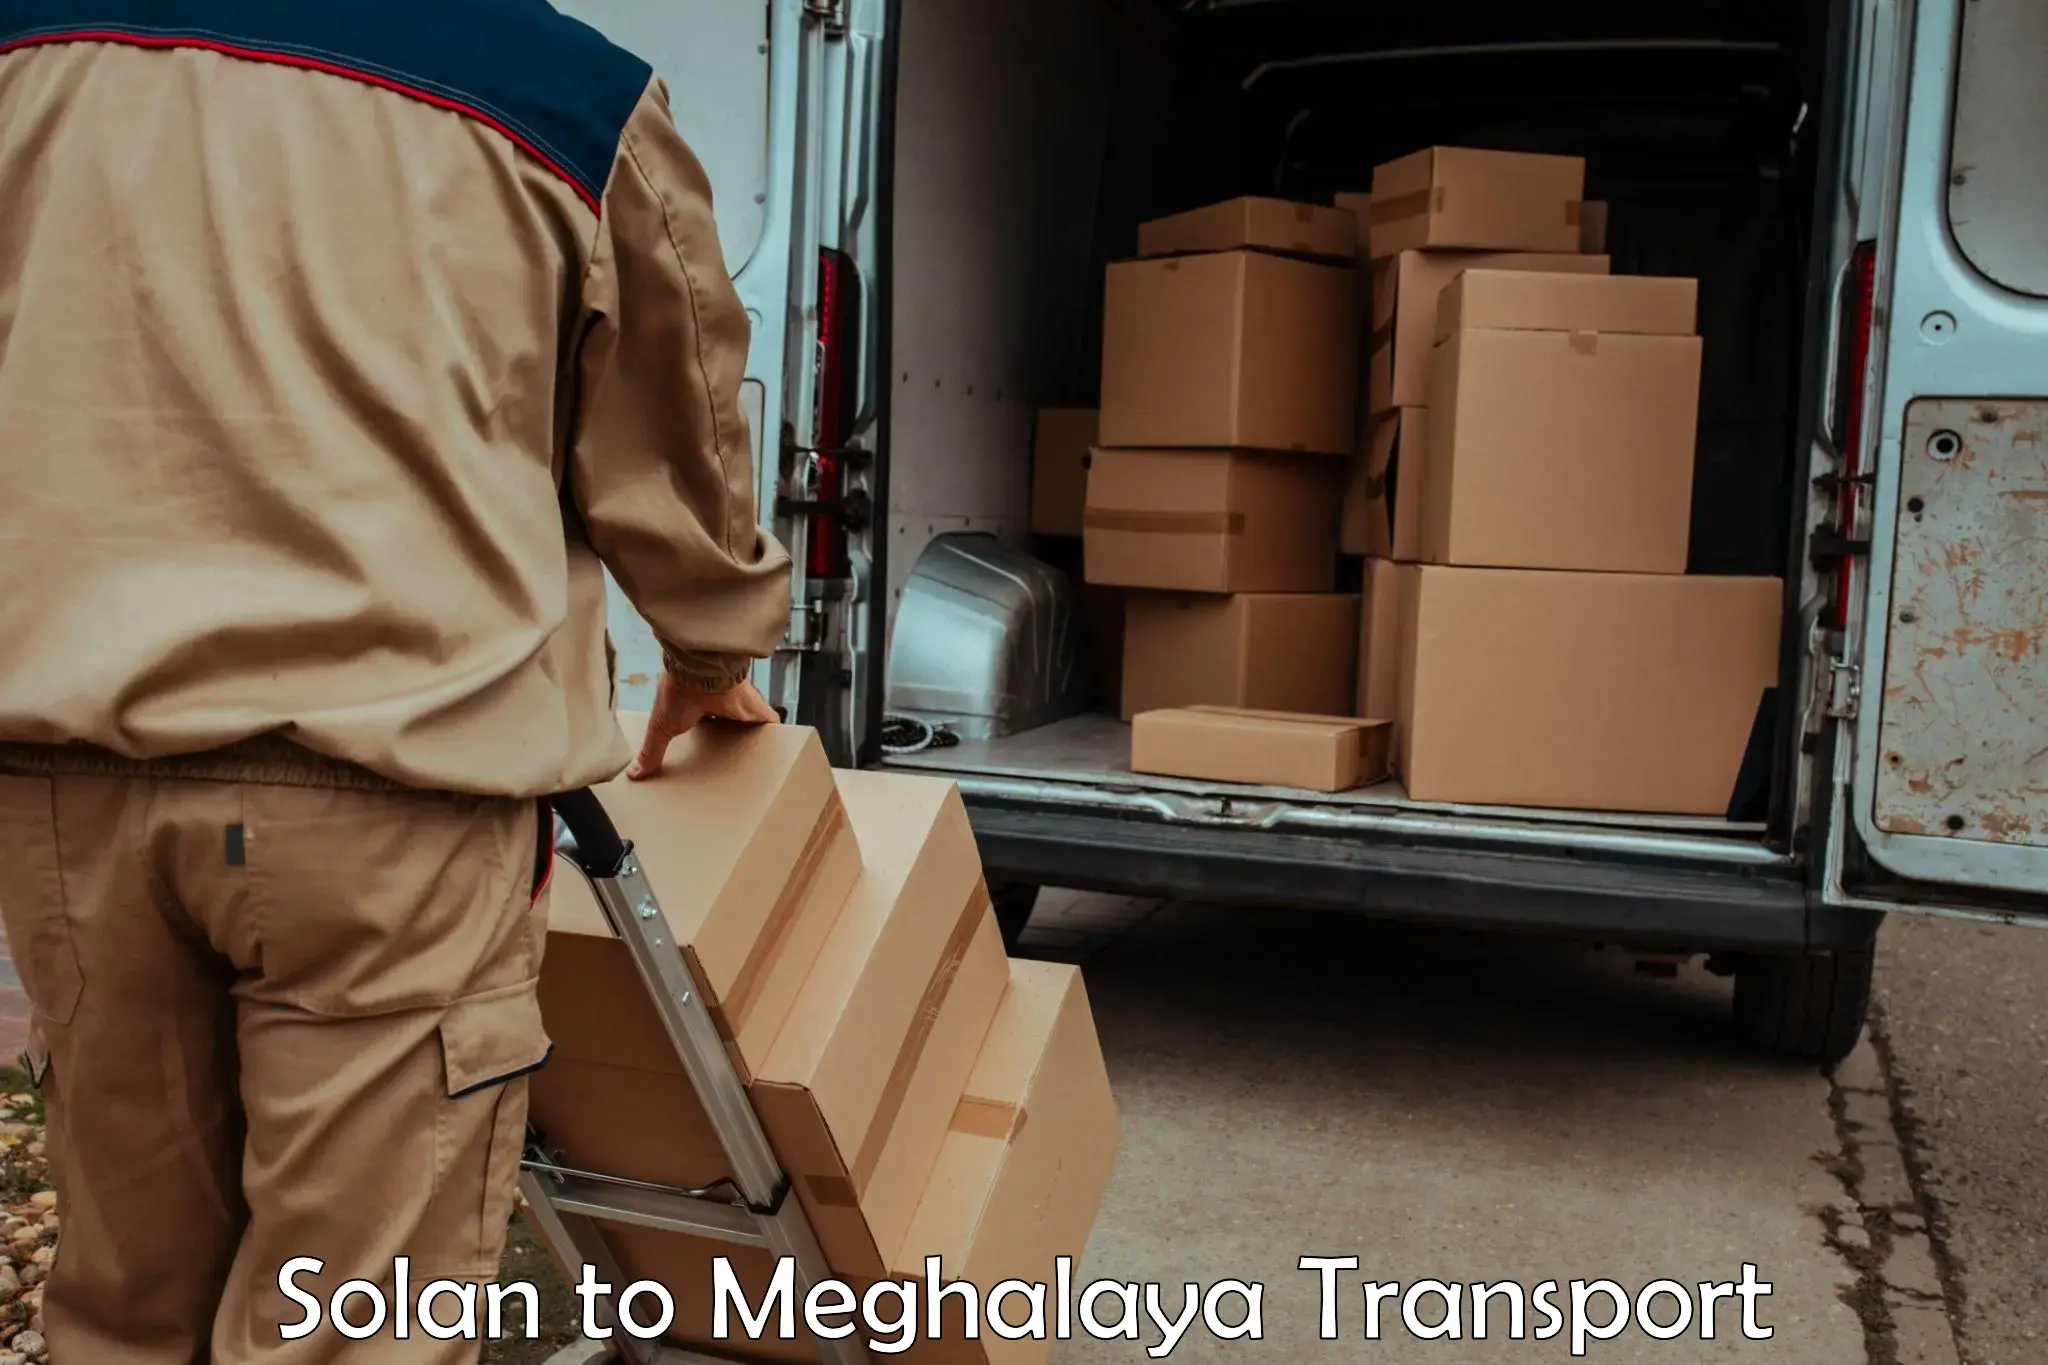 Furniture transport service Solan to Meghalaya